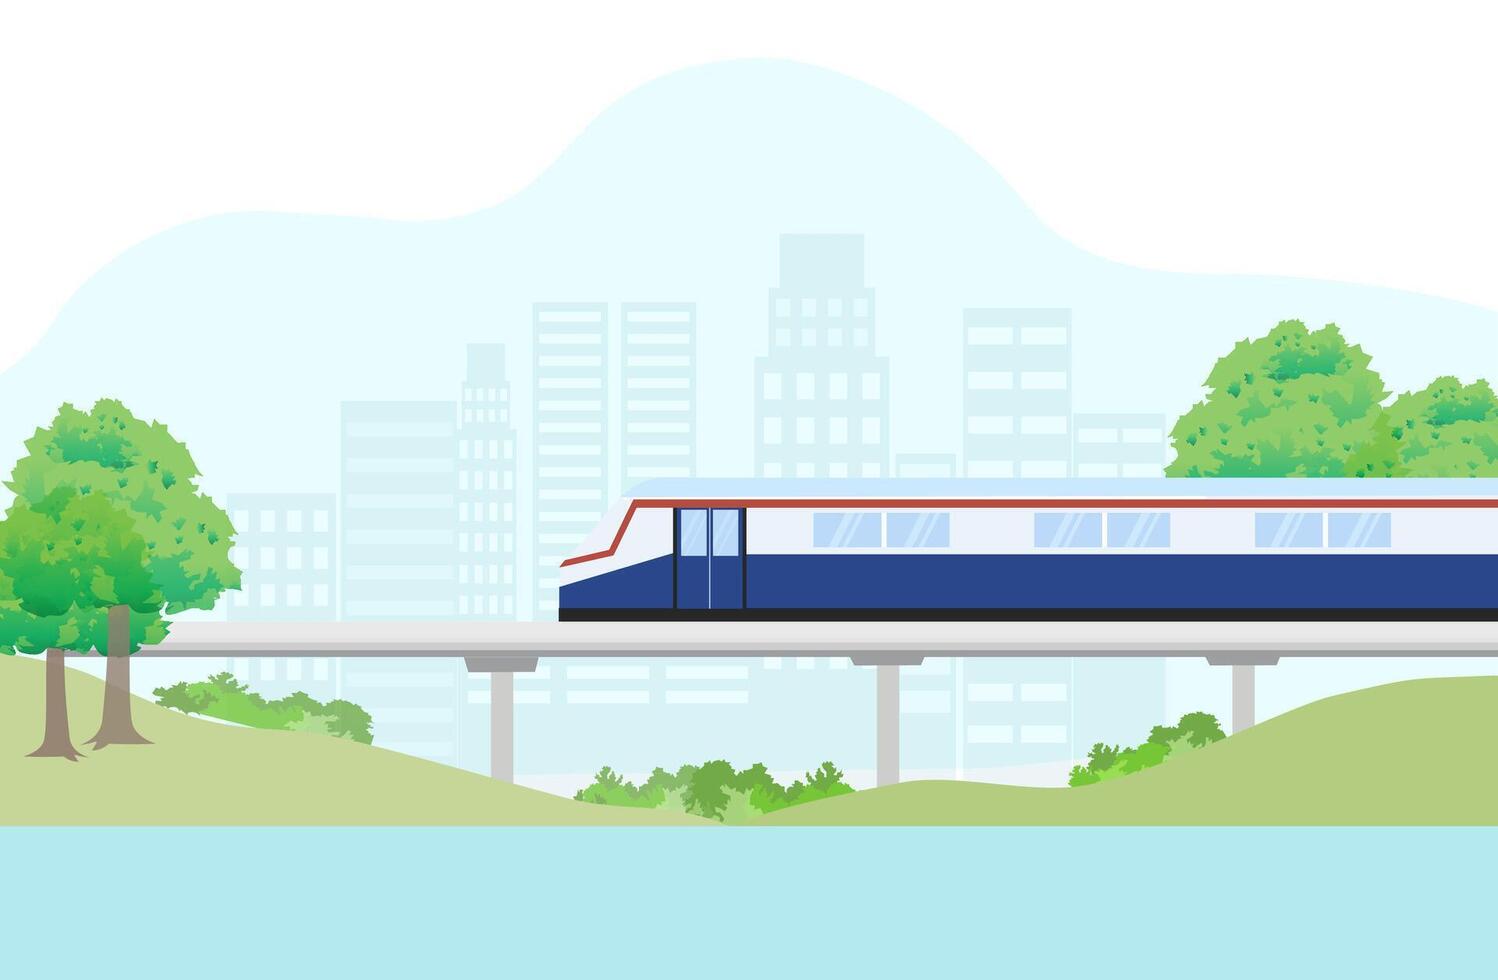 BTS Sky train vector Illustration. Transportation concept